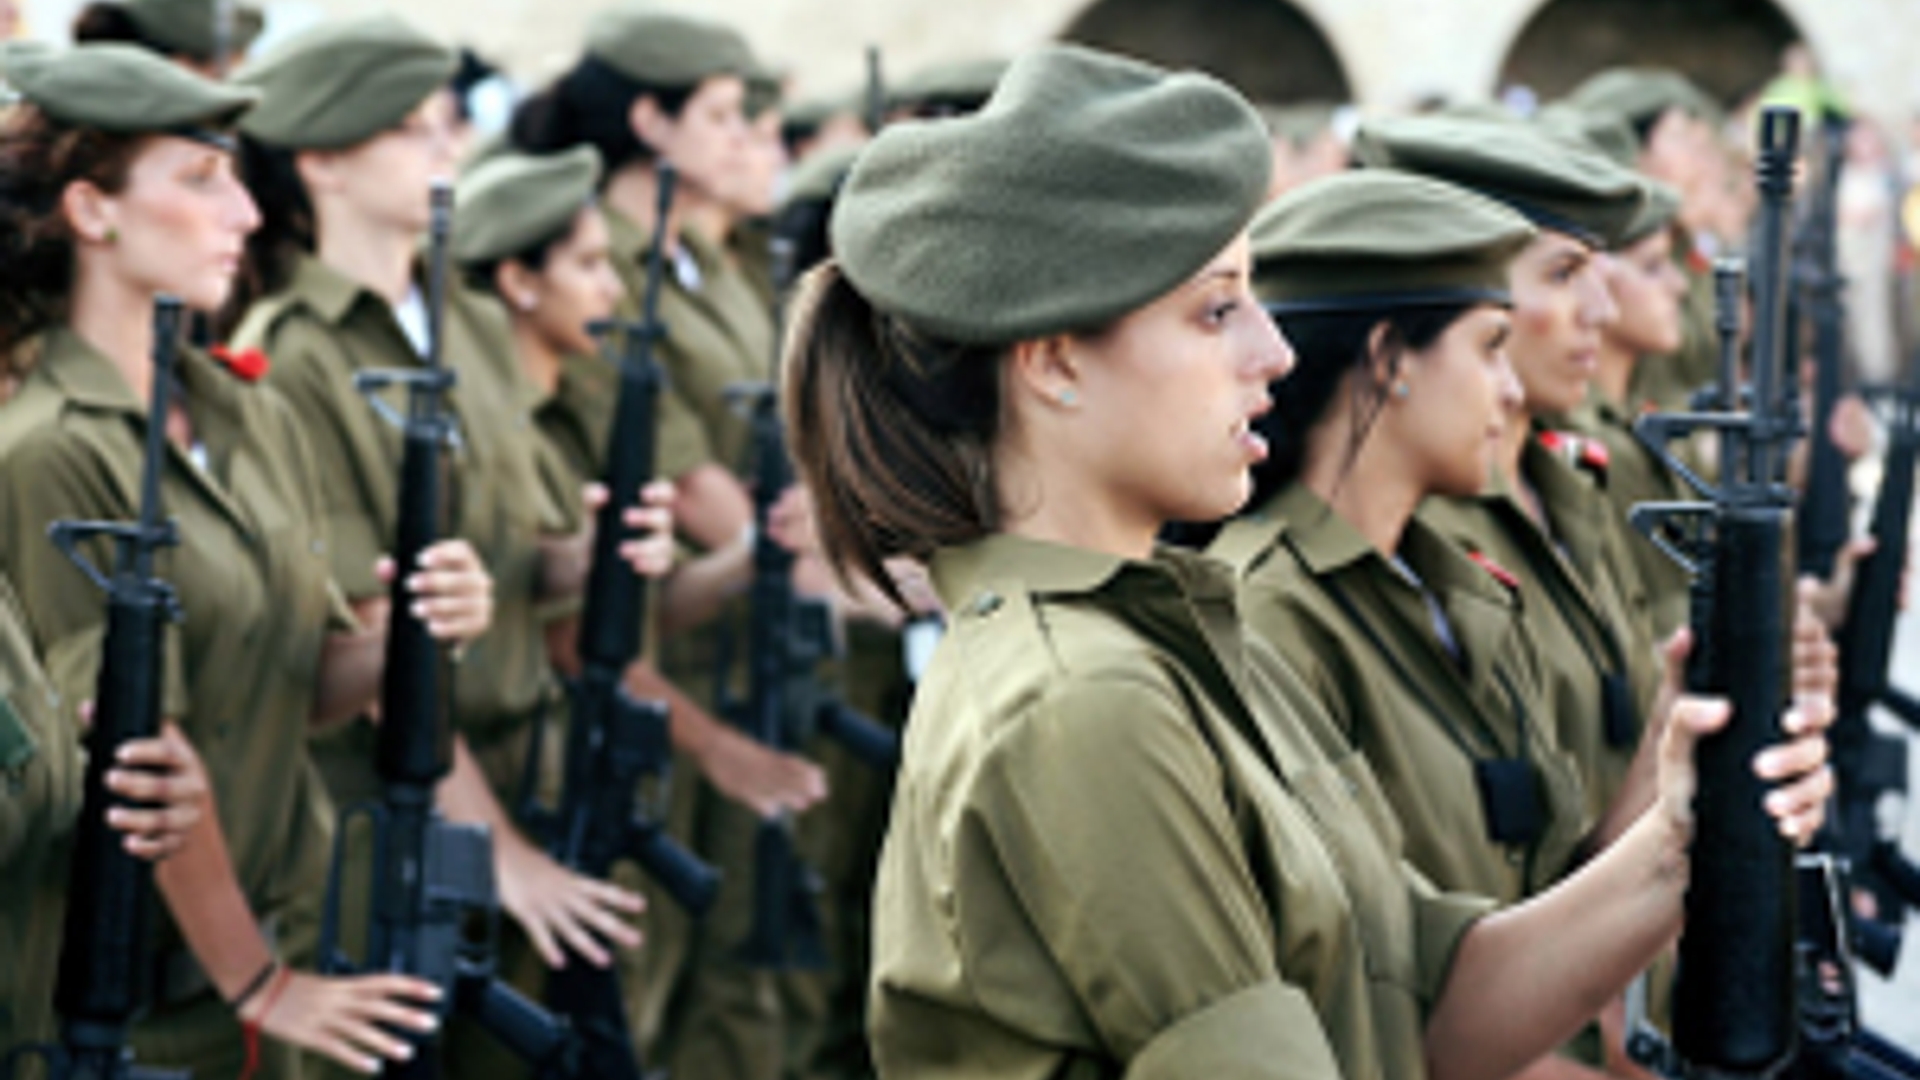 Flickr_Israel_vrouwelijkesoldaten_Rob_sheridan_300.jpg